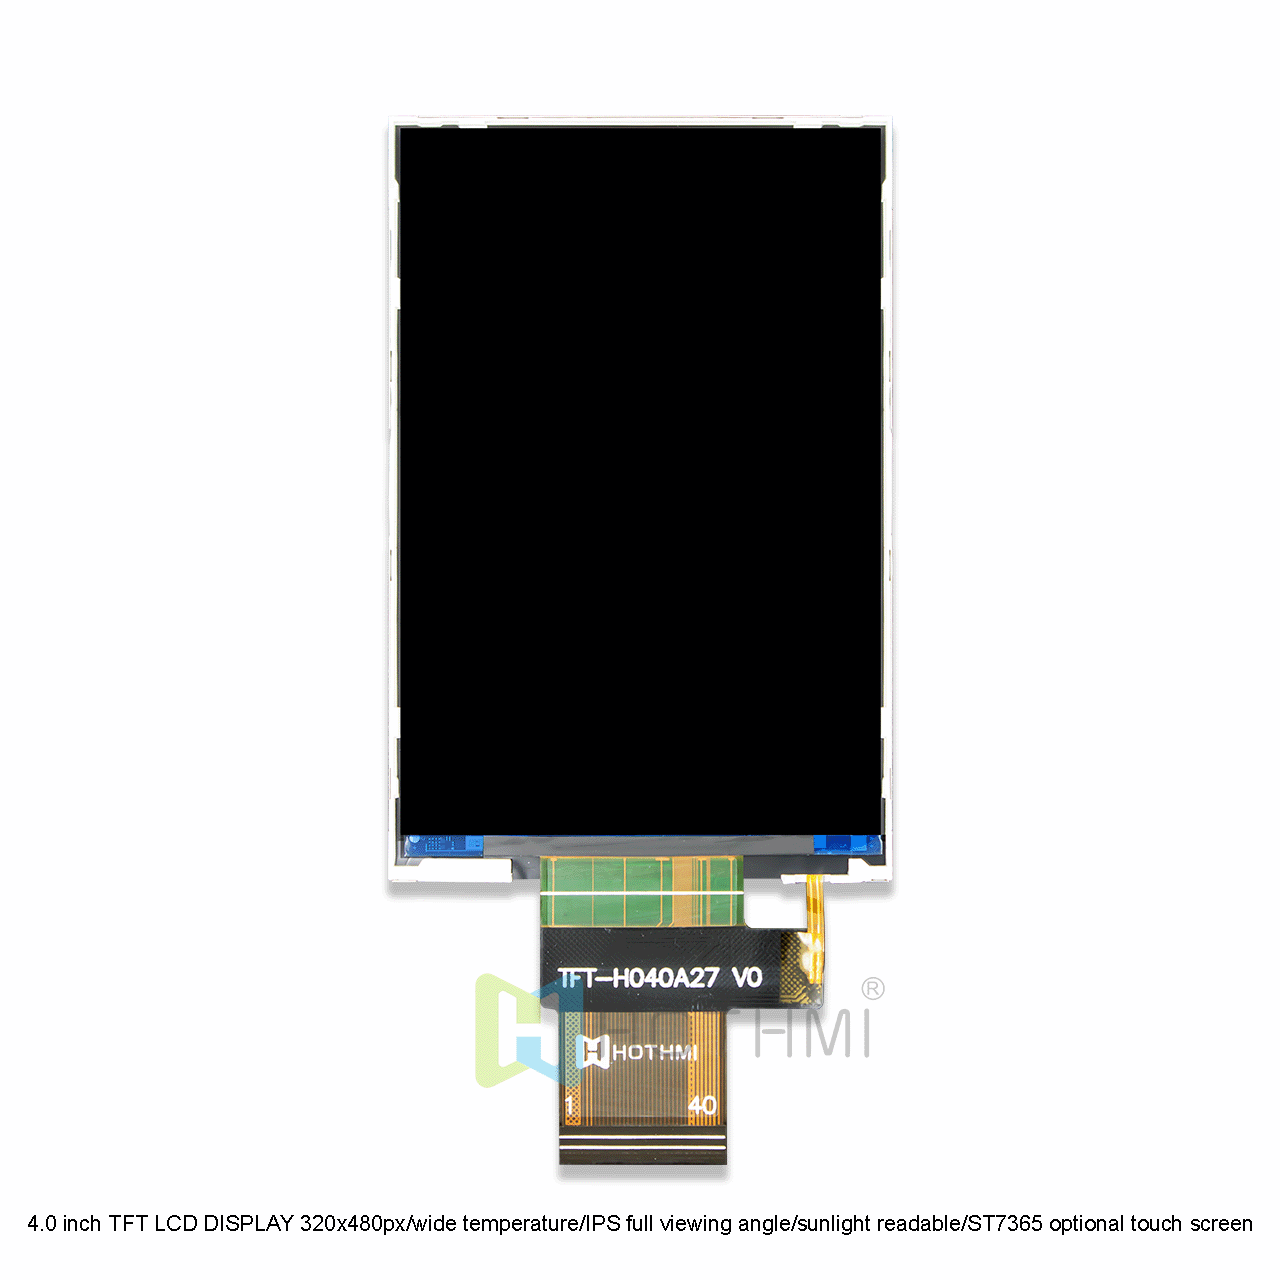 4寸TFT液晶显示屏SPI 320x480点阵/宽温/IPS全视角/阳光下可视/ST7365/可选触摸屏